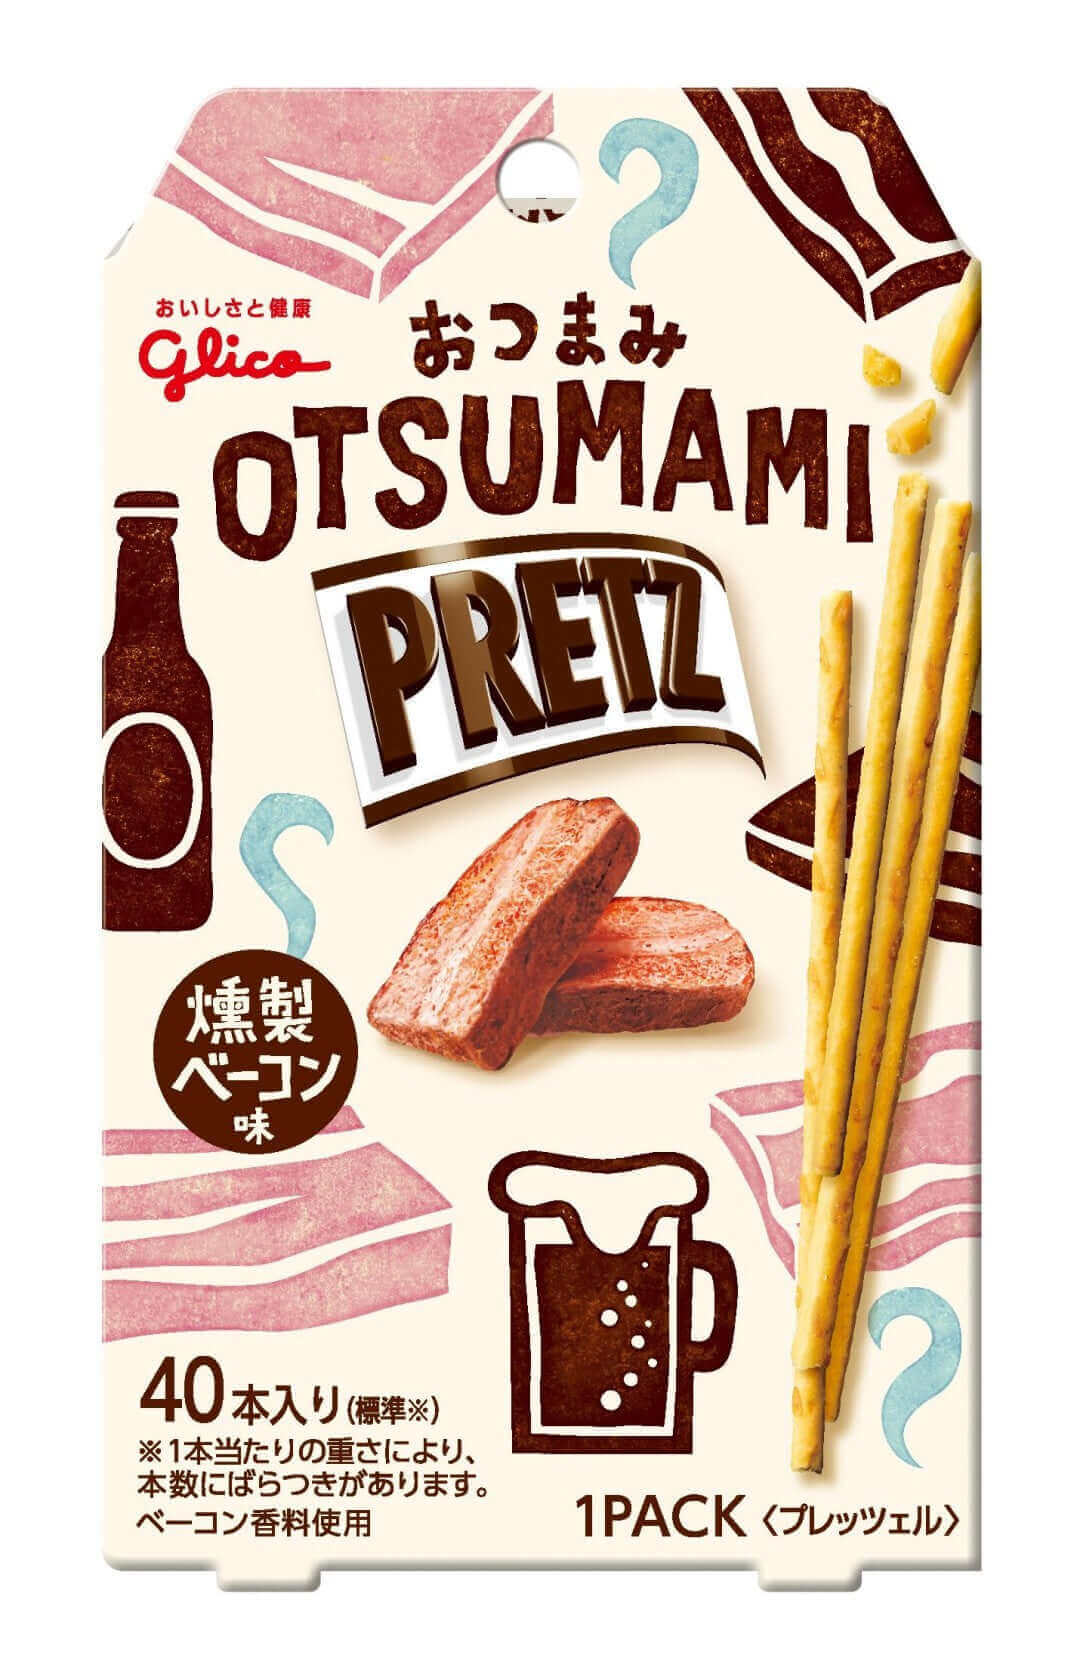 Pretz Super Crispy Biscuit Sticks - Smoked Bacon